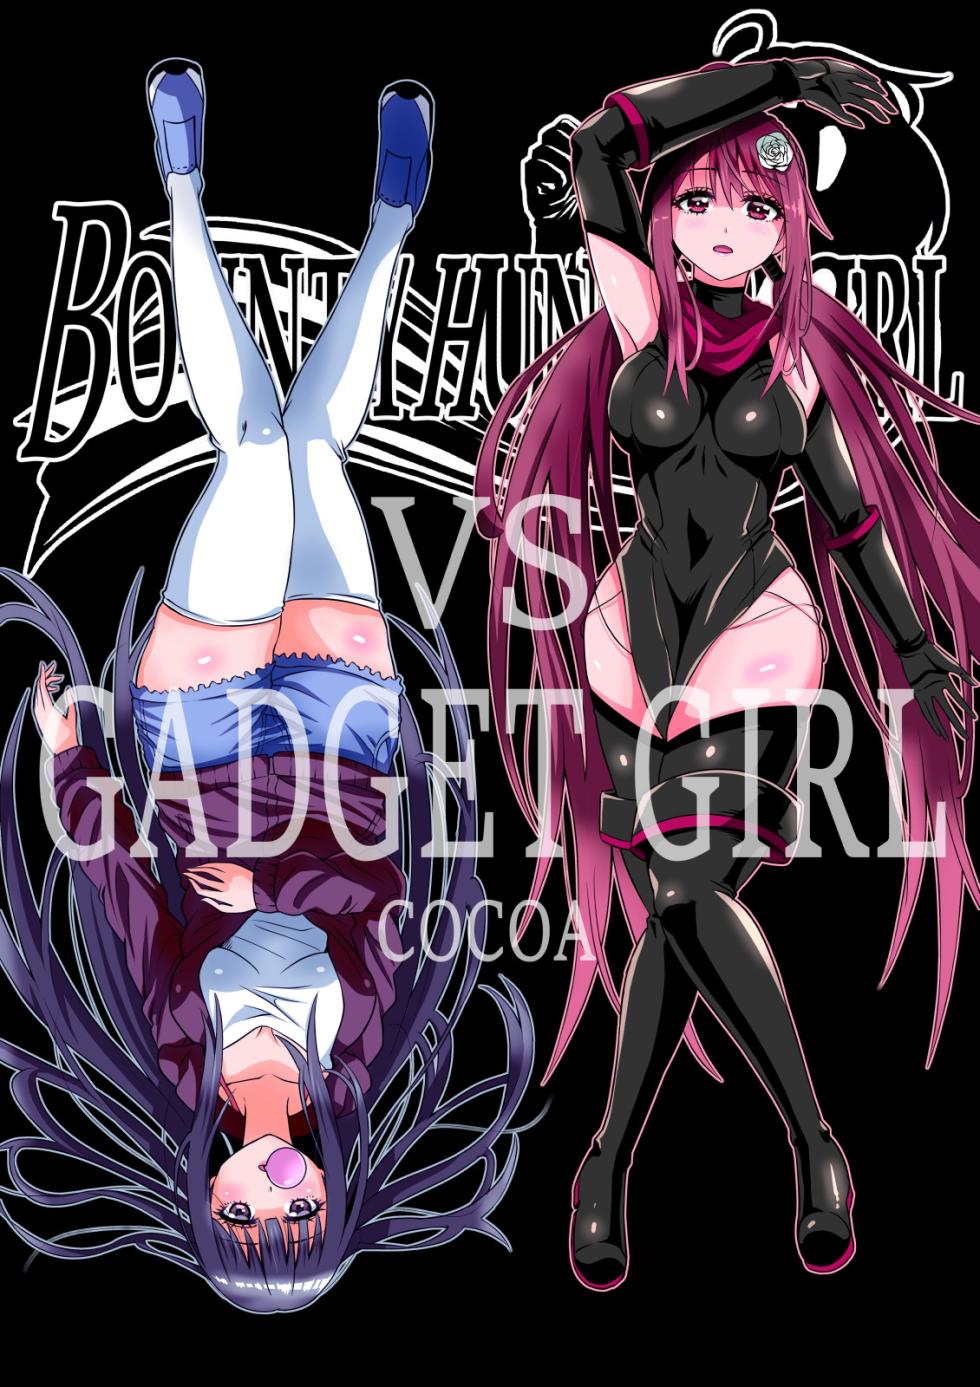 BOUNTY HUNTER GIRL vs GADGET GIRL Ch. 22 - Page 1